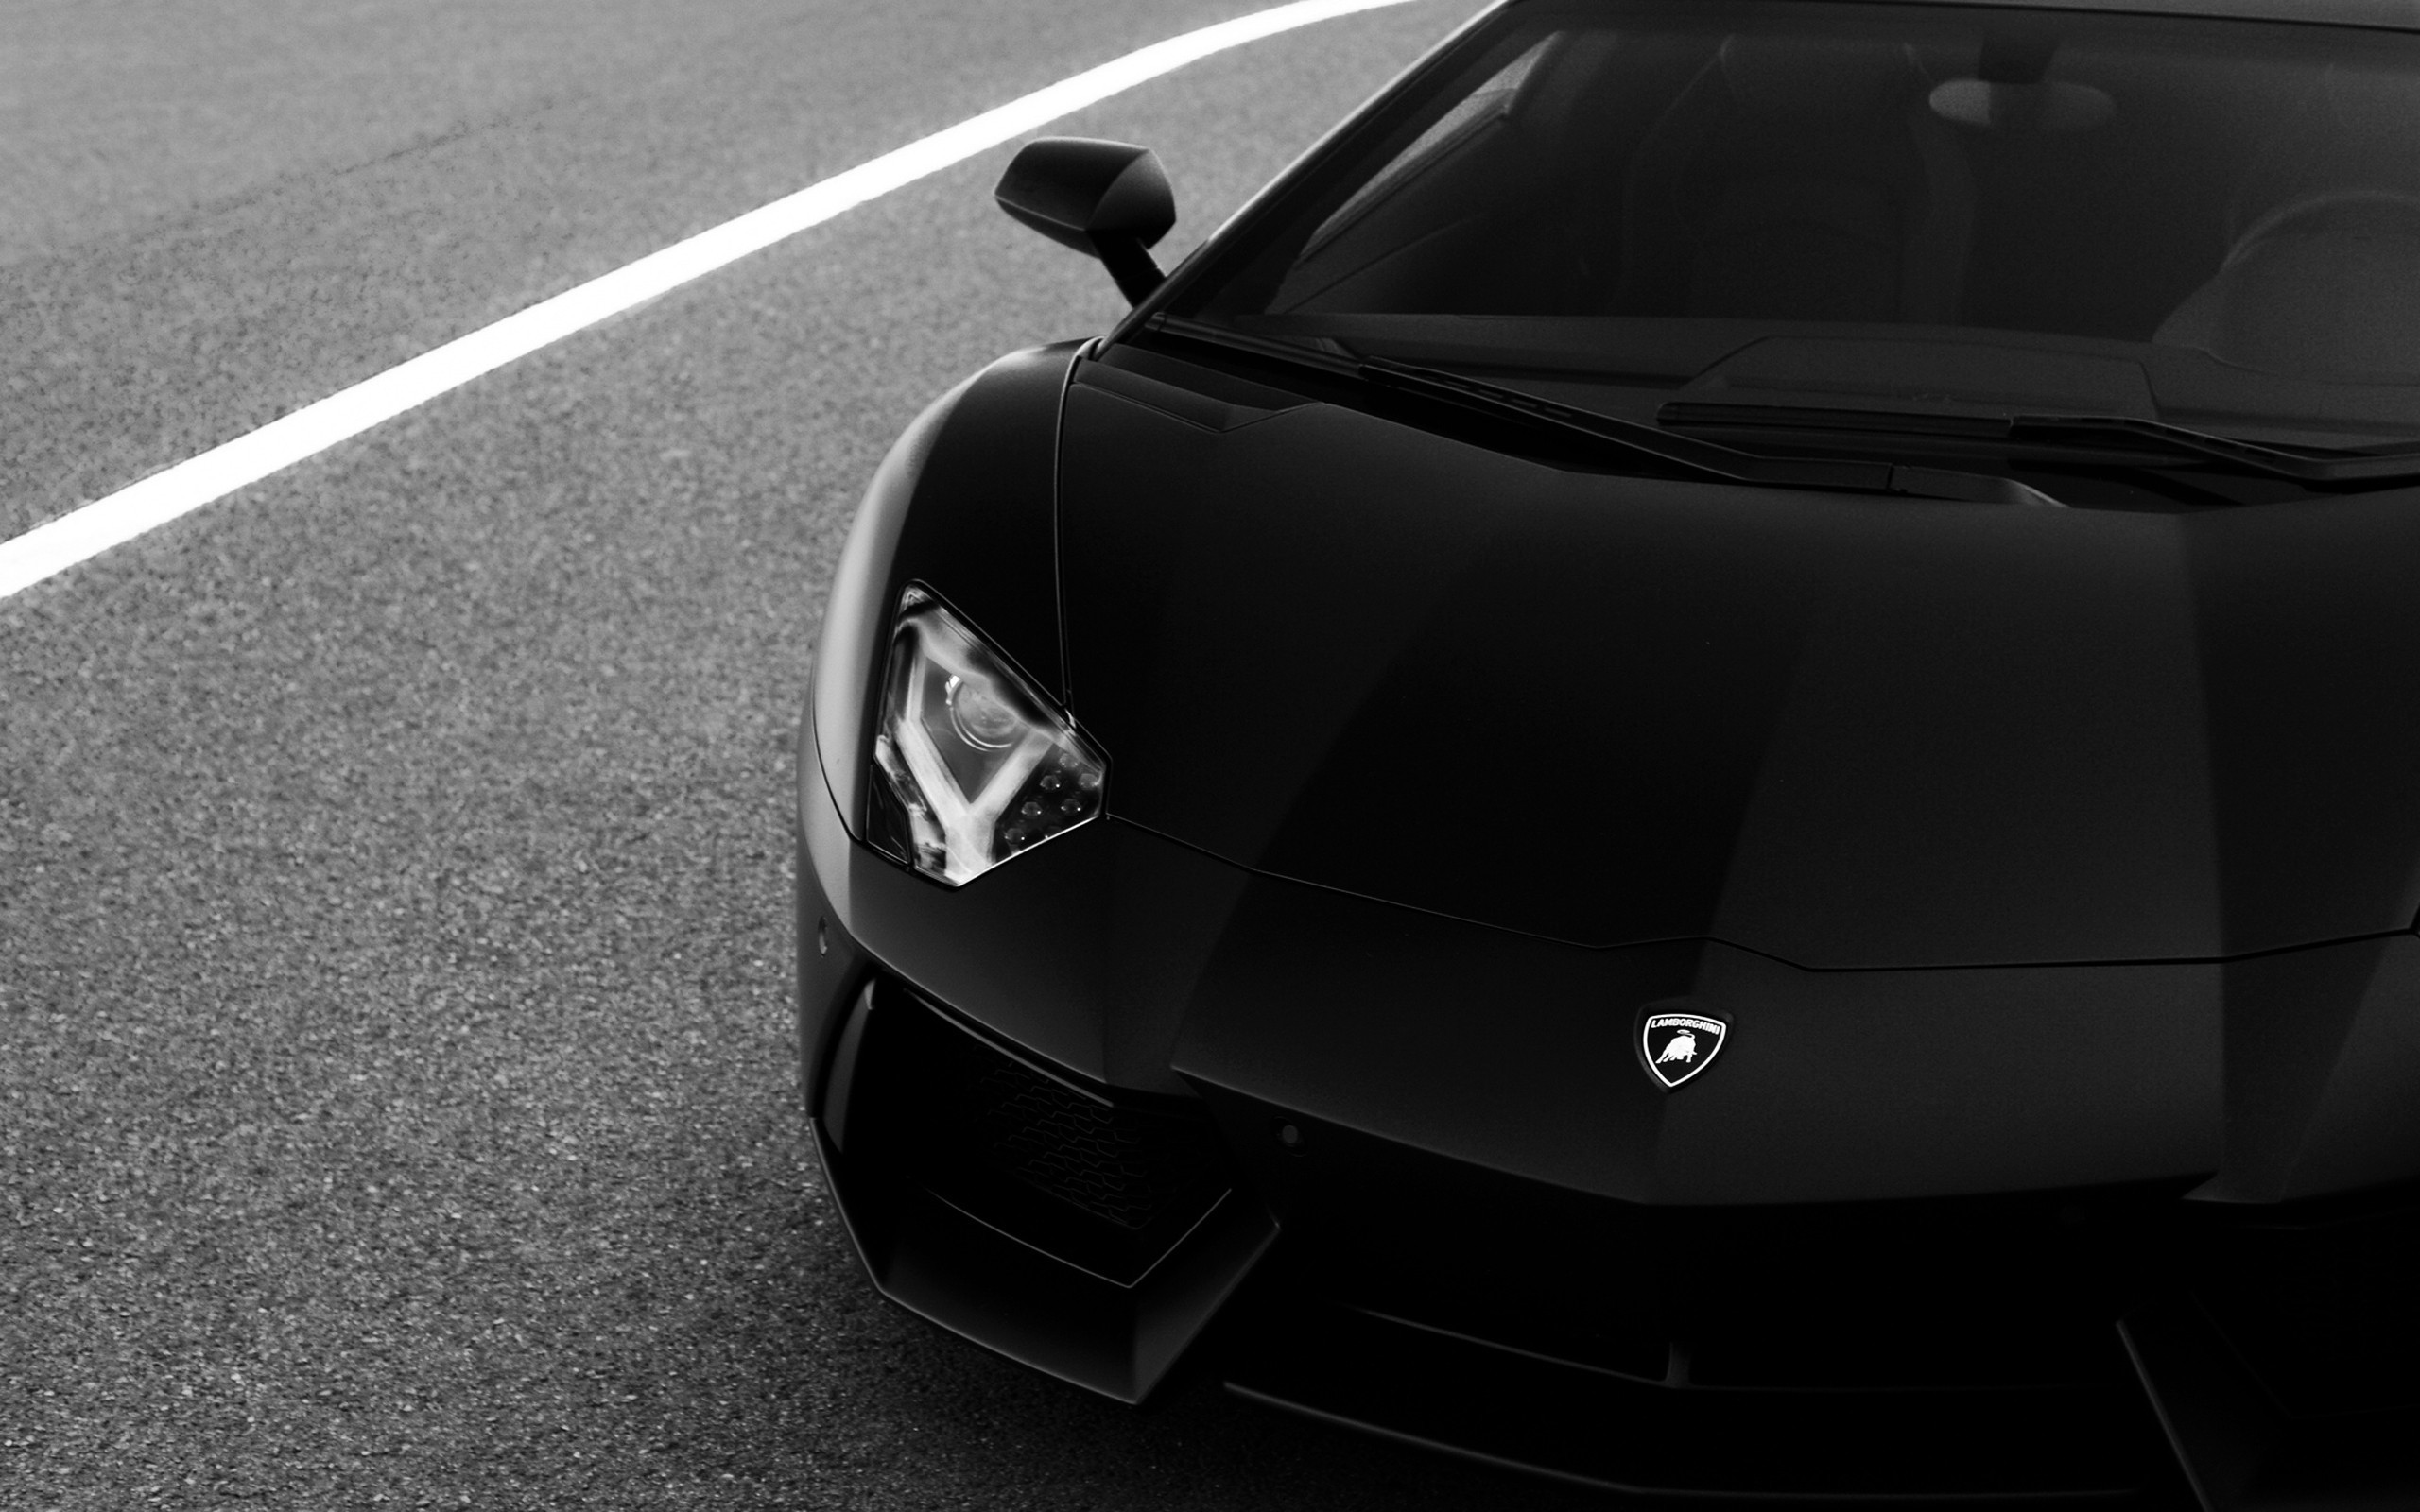 2560x1600 Lamborghini Aventador Black and White. ‹